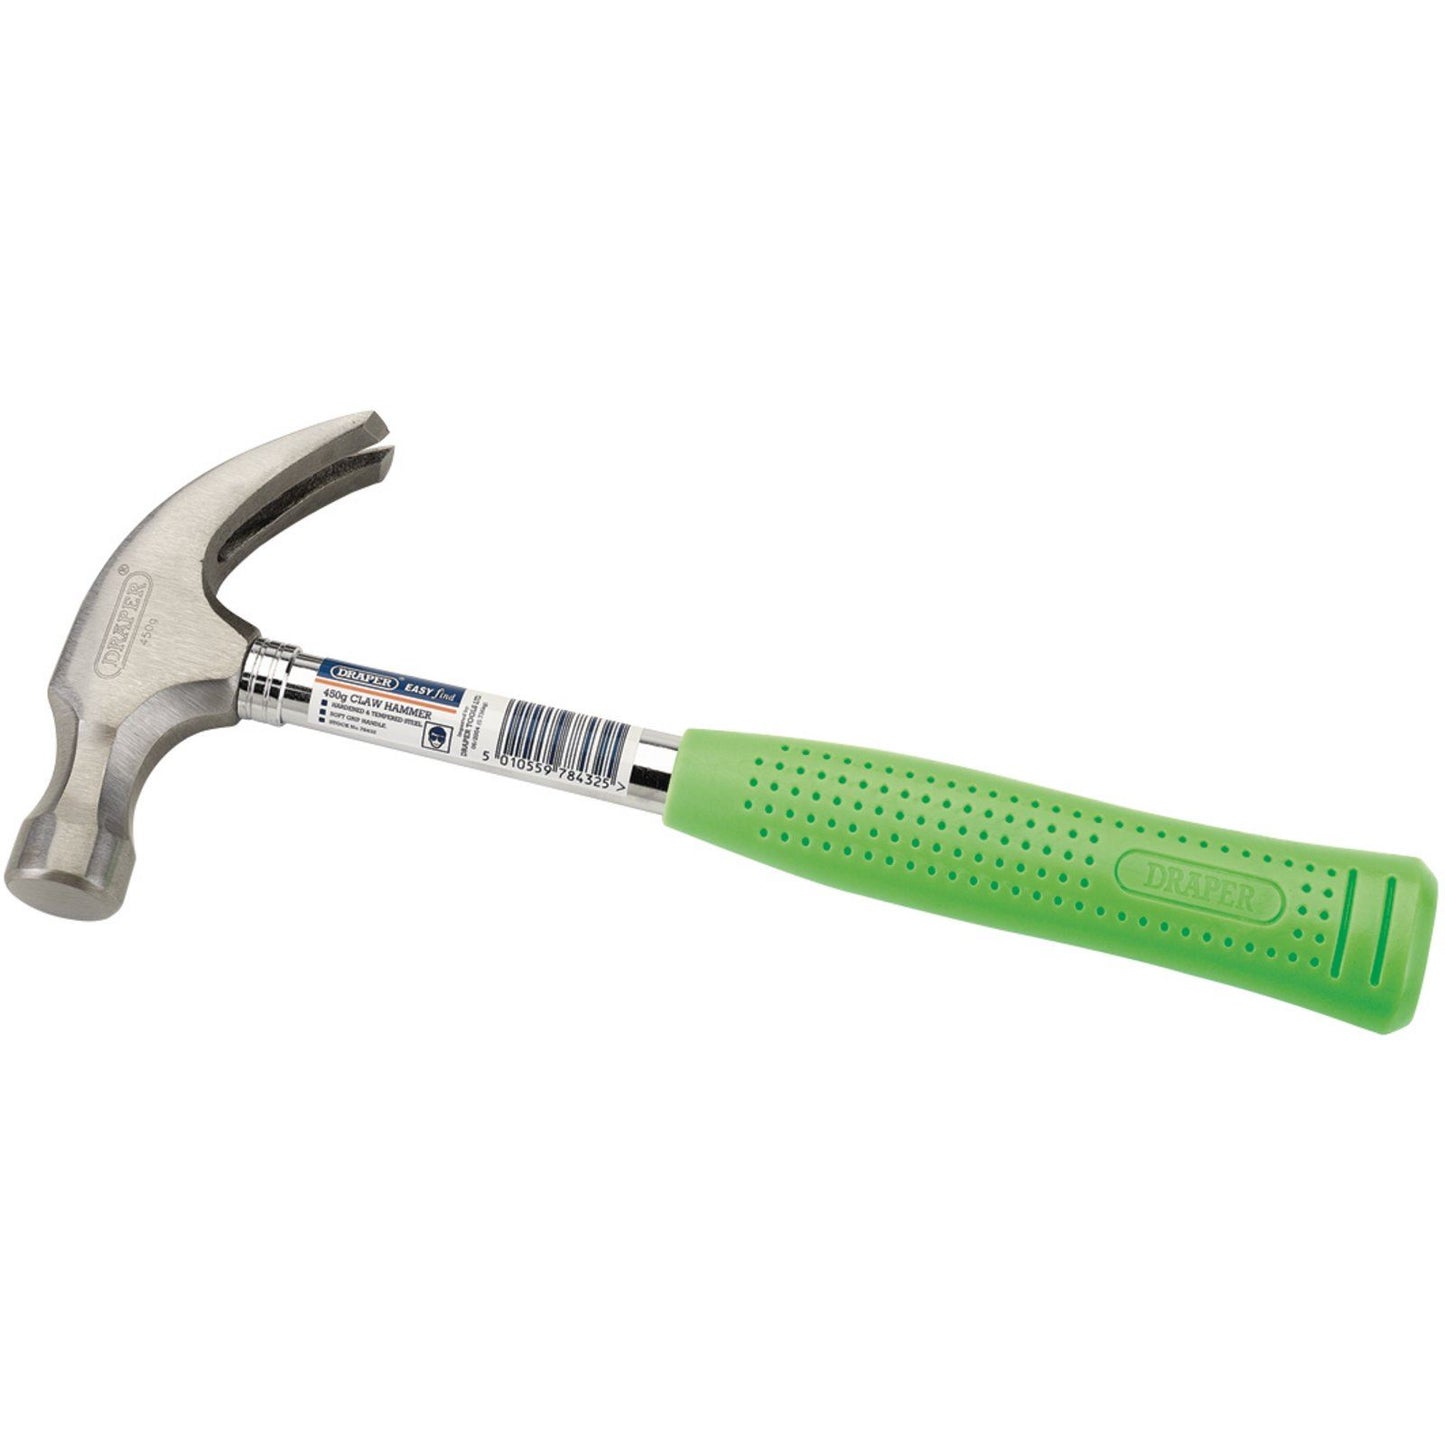 Draper Easy Find Claw Hammer (450g/16oz) CHS/EFG - 78432